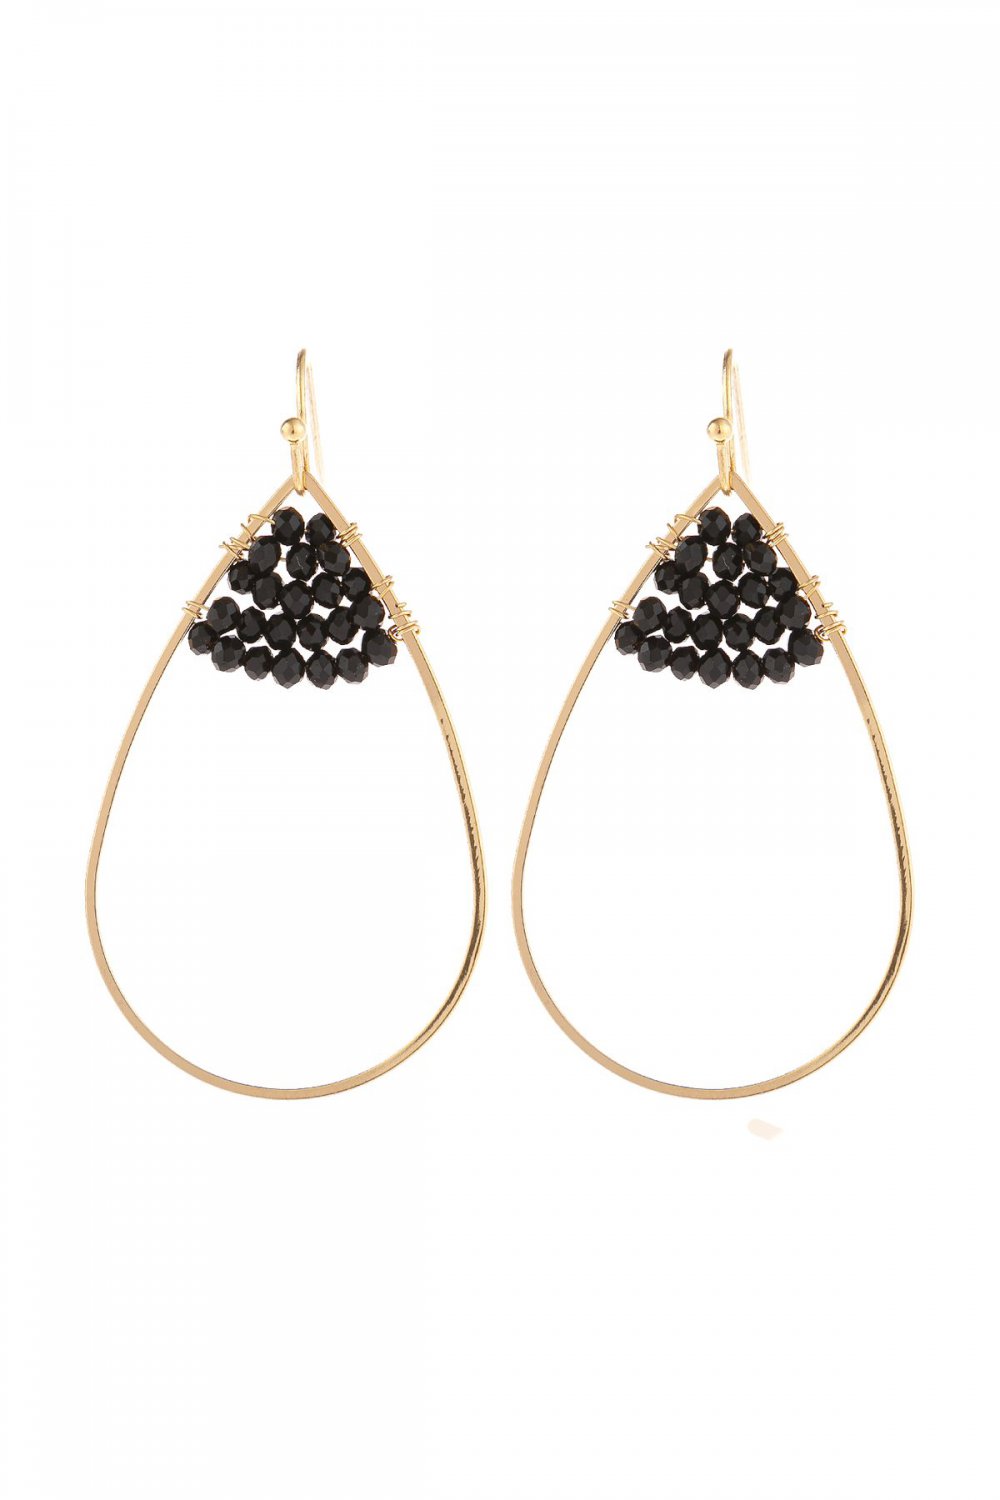 Hde3070 - Open Teardrop With Rondelle Beads Earrings-Black